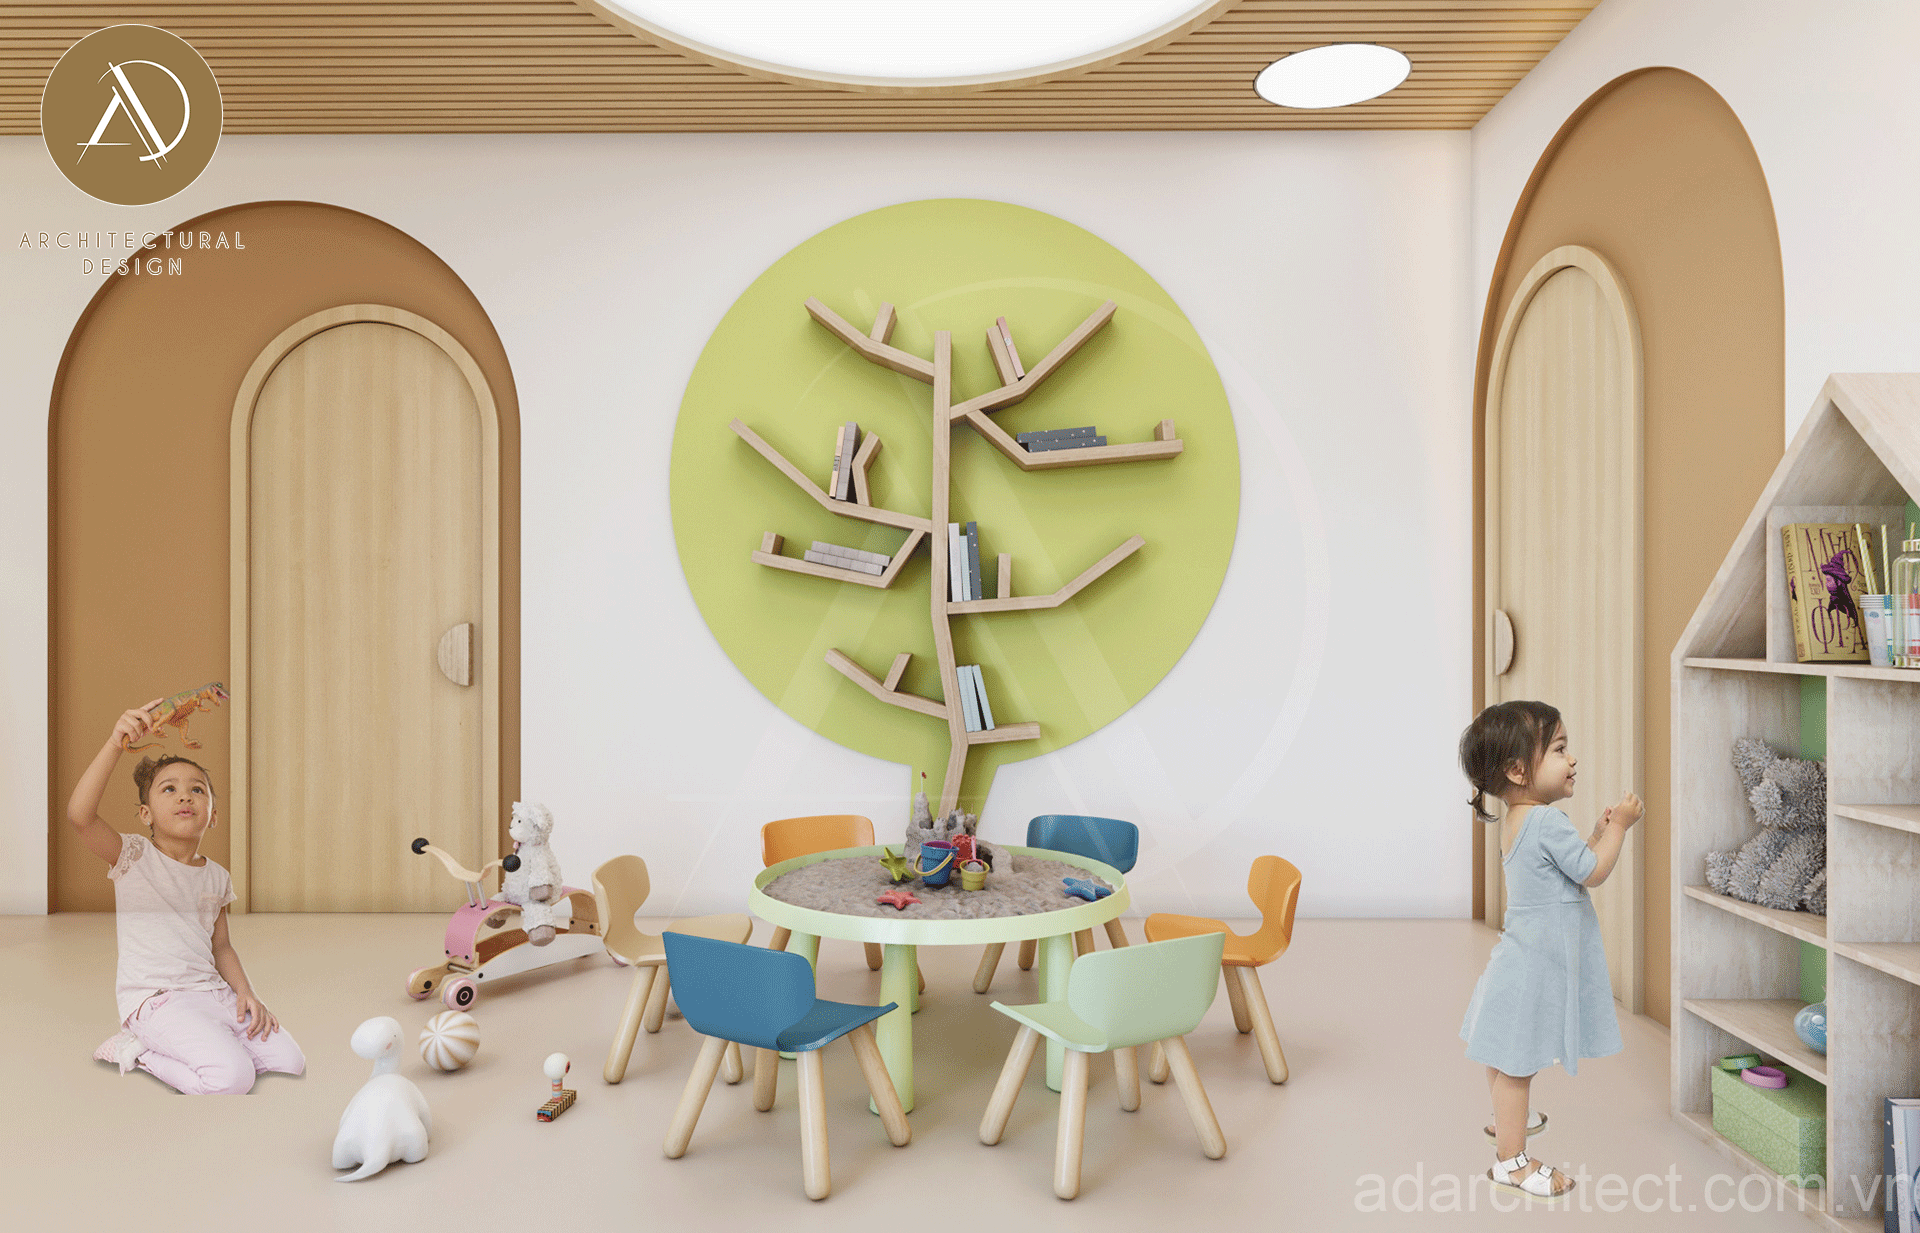 thiết kế nhà trẻ: không gian vui chơi thoải mái cho trẻ nhỏ